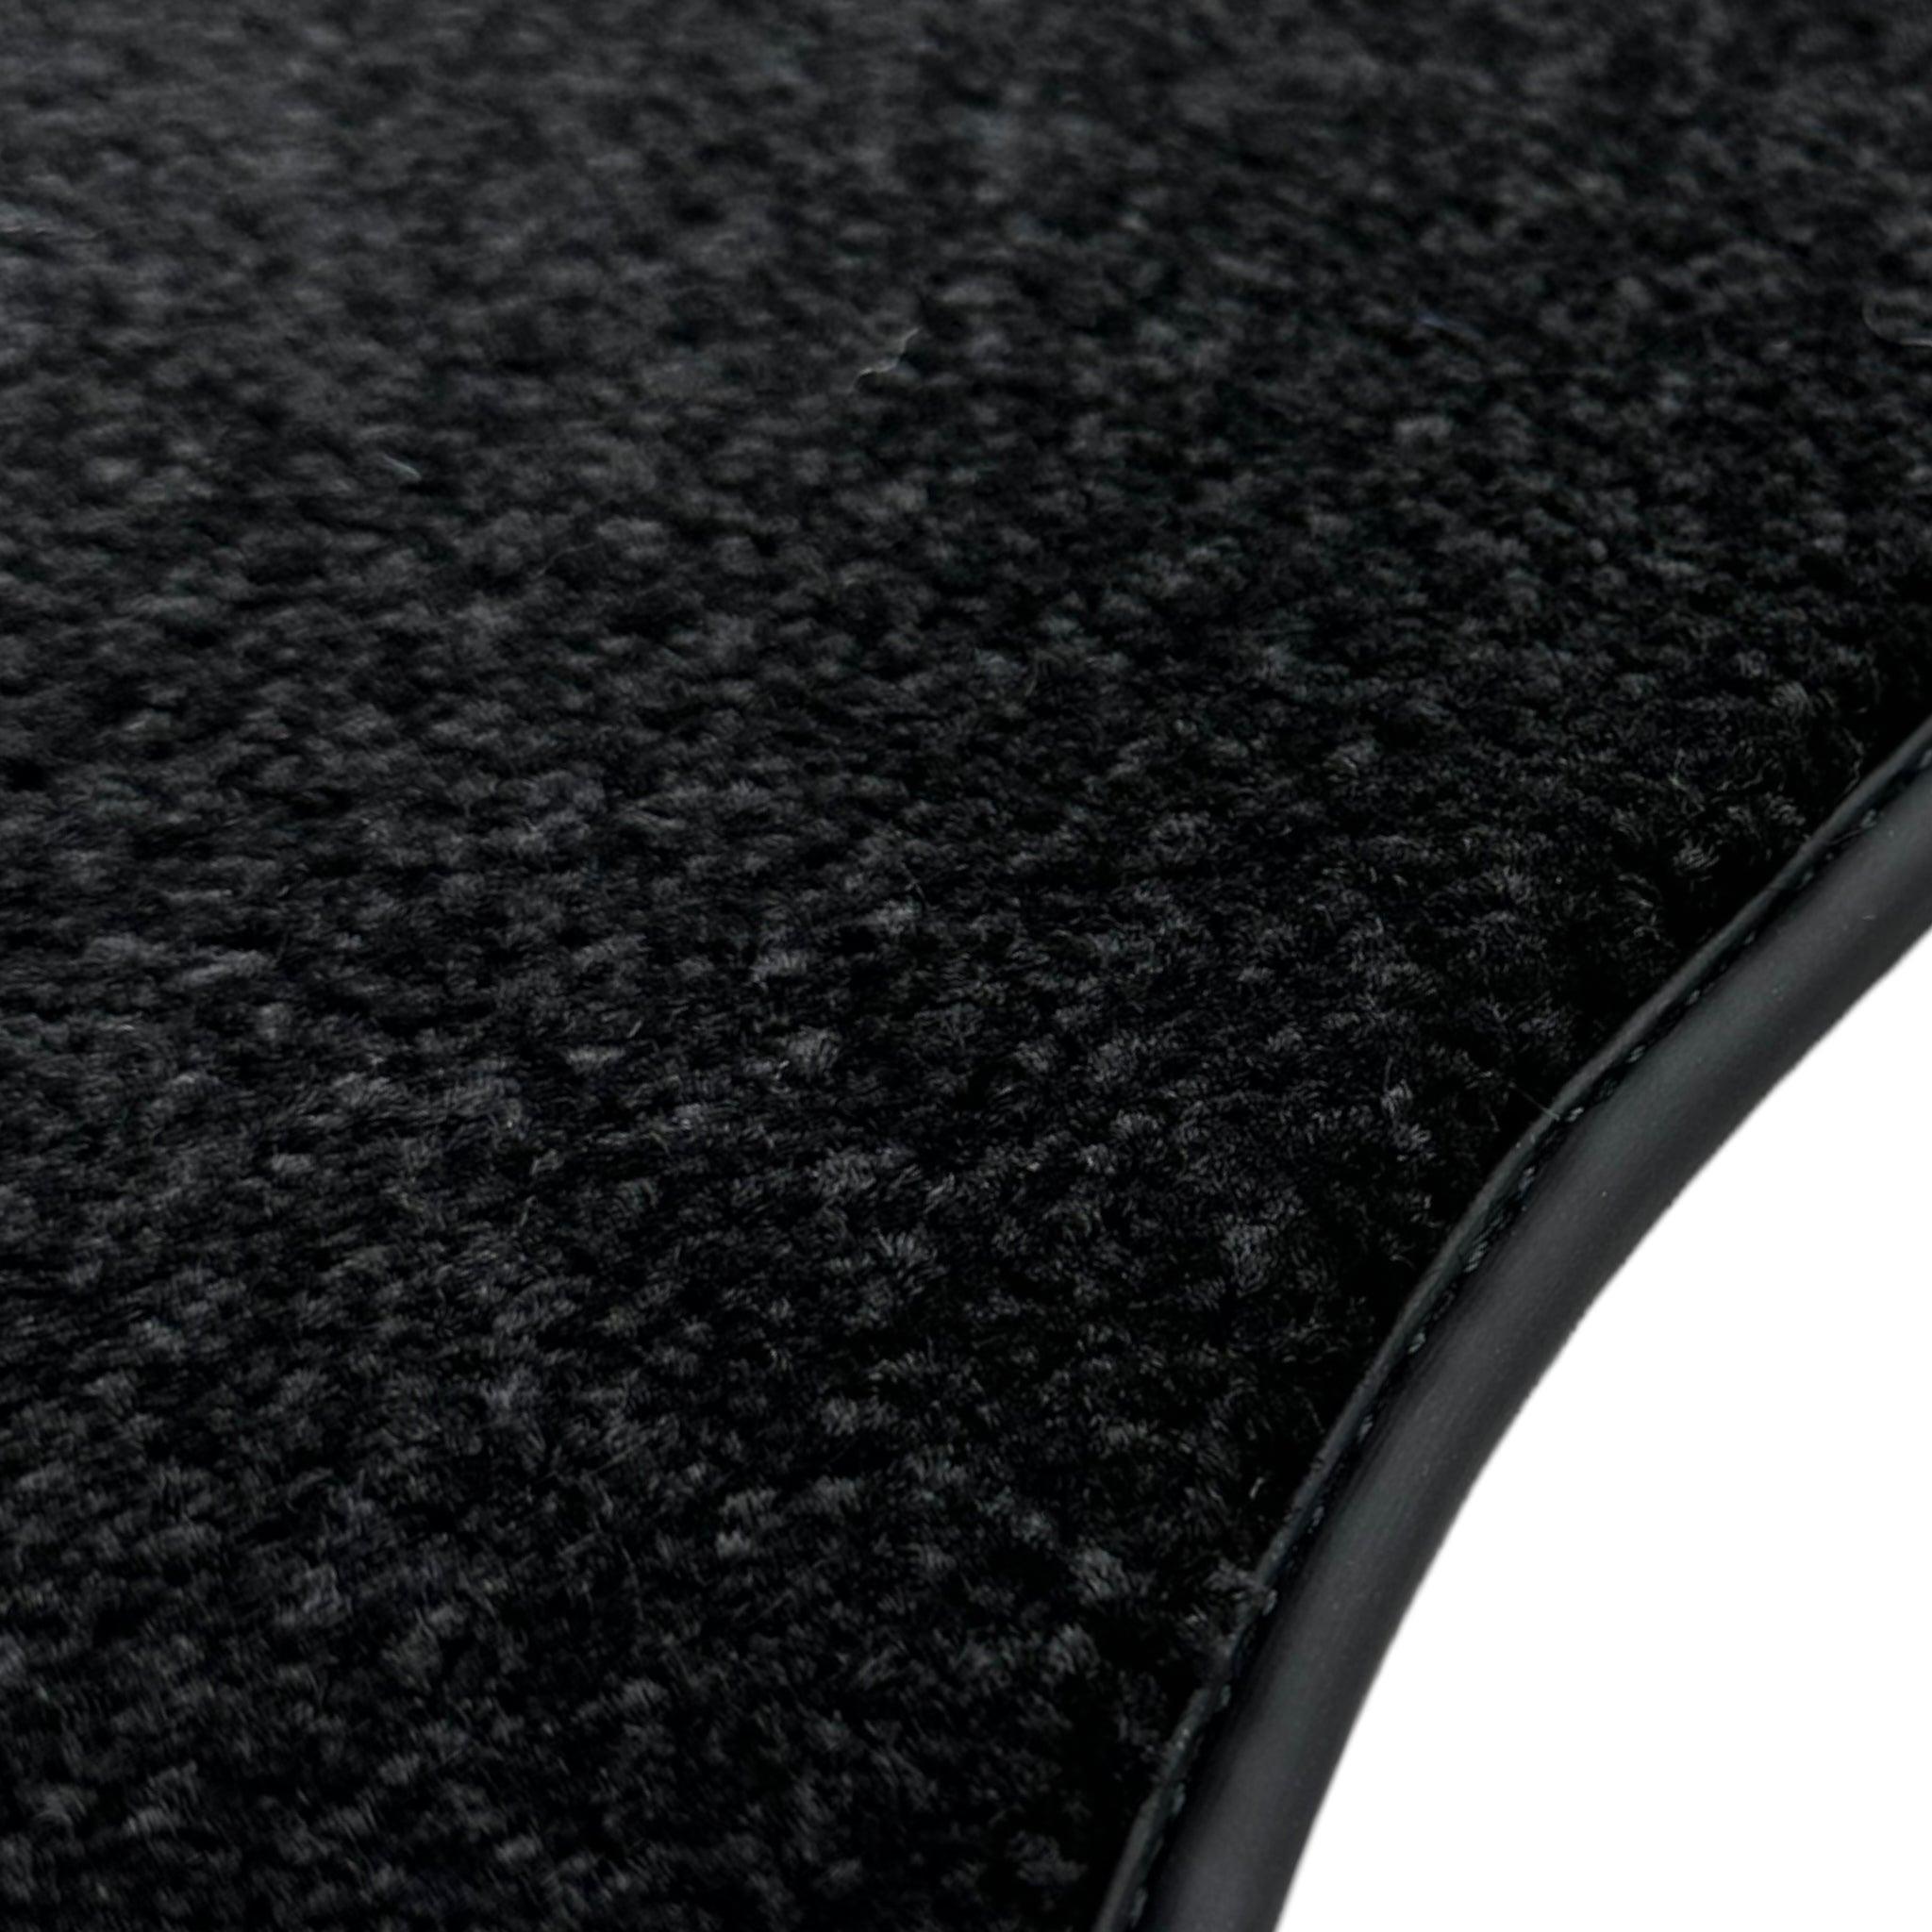 Black Luxury Floor Mats For Mercedes Benz E-Class A207 Convertible (2010-2013) | ER56 Design